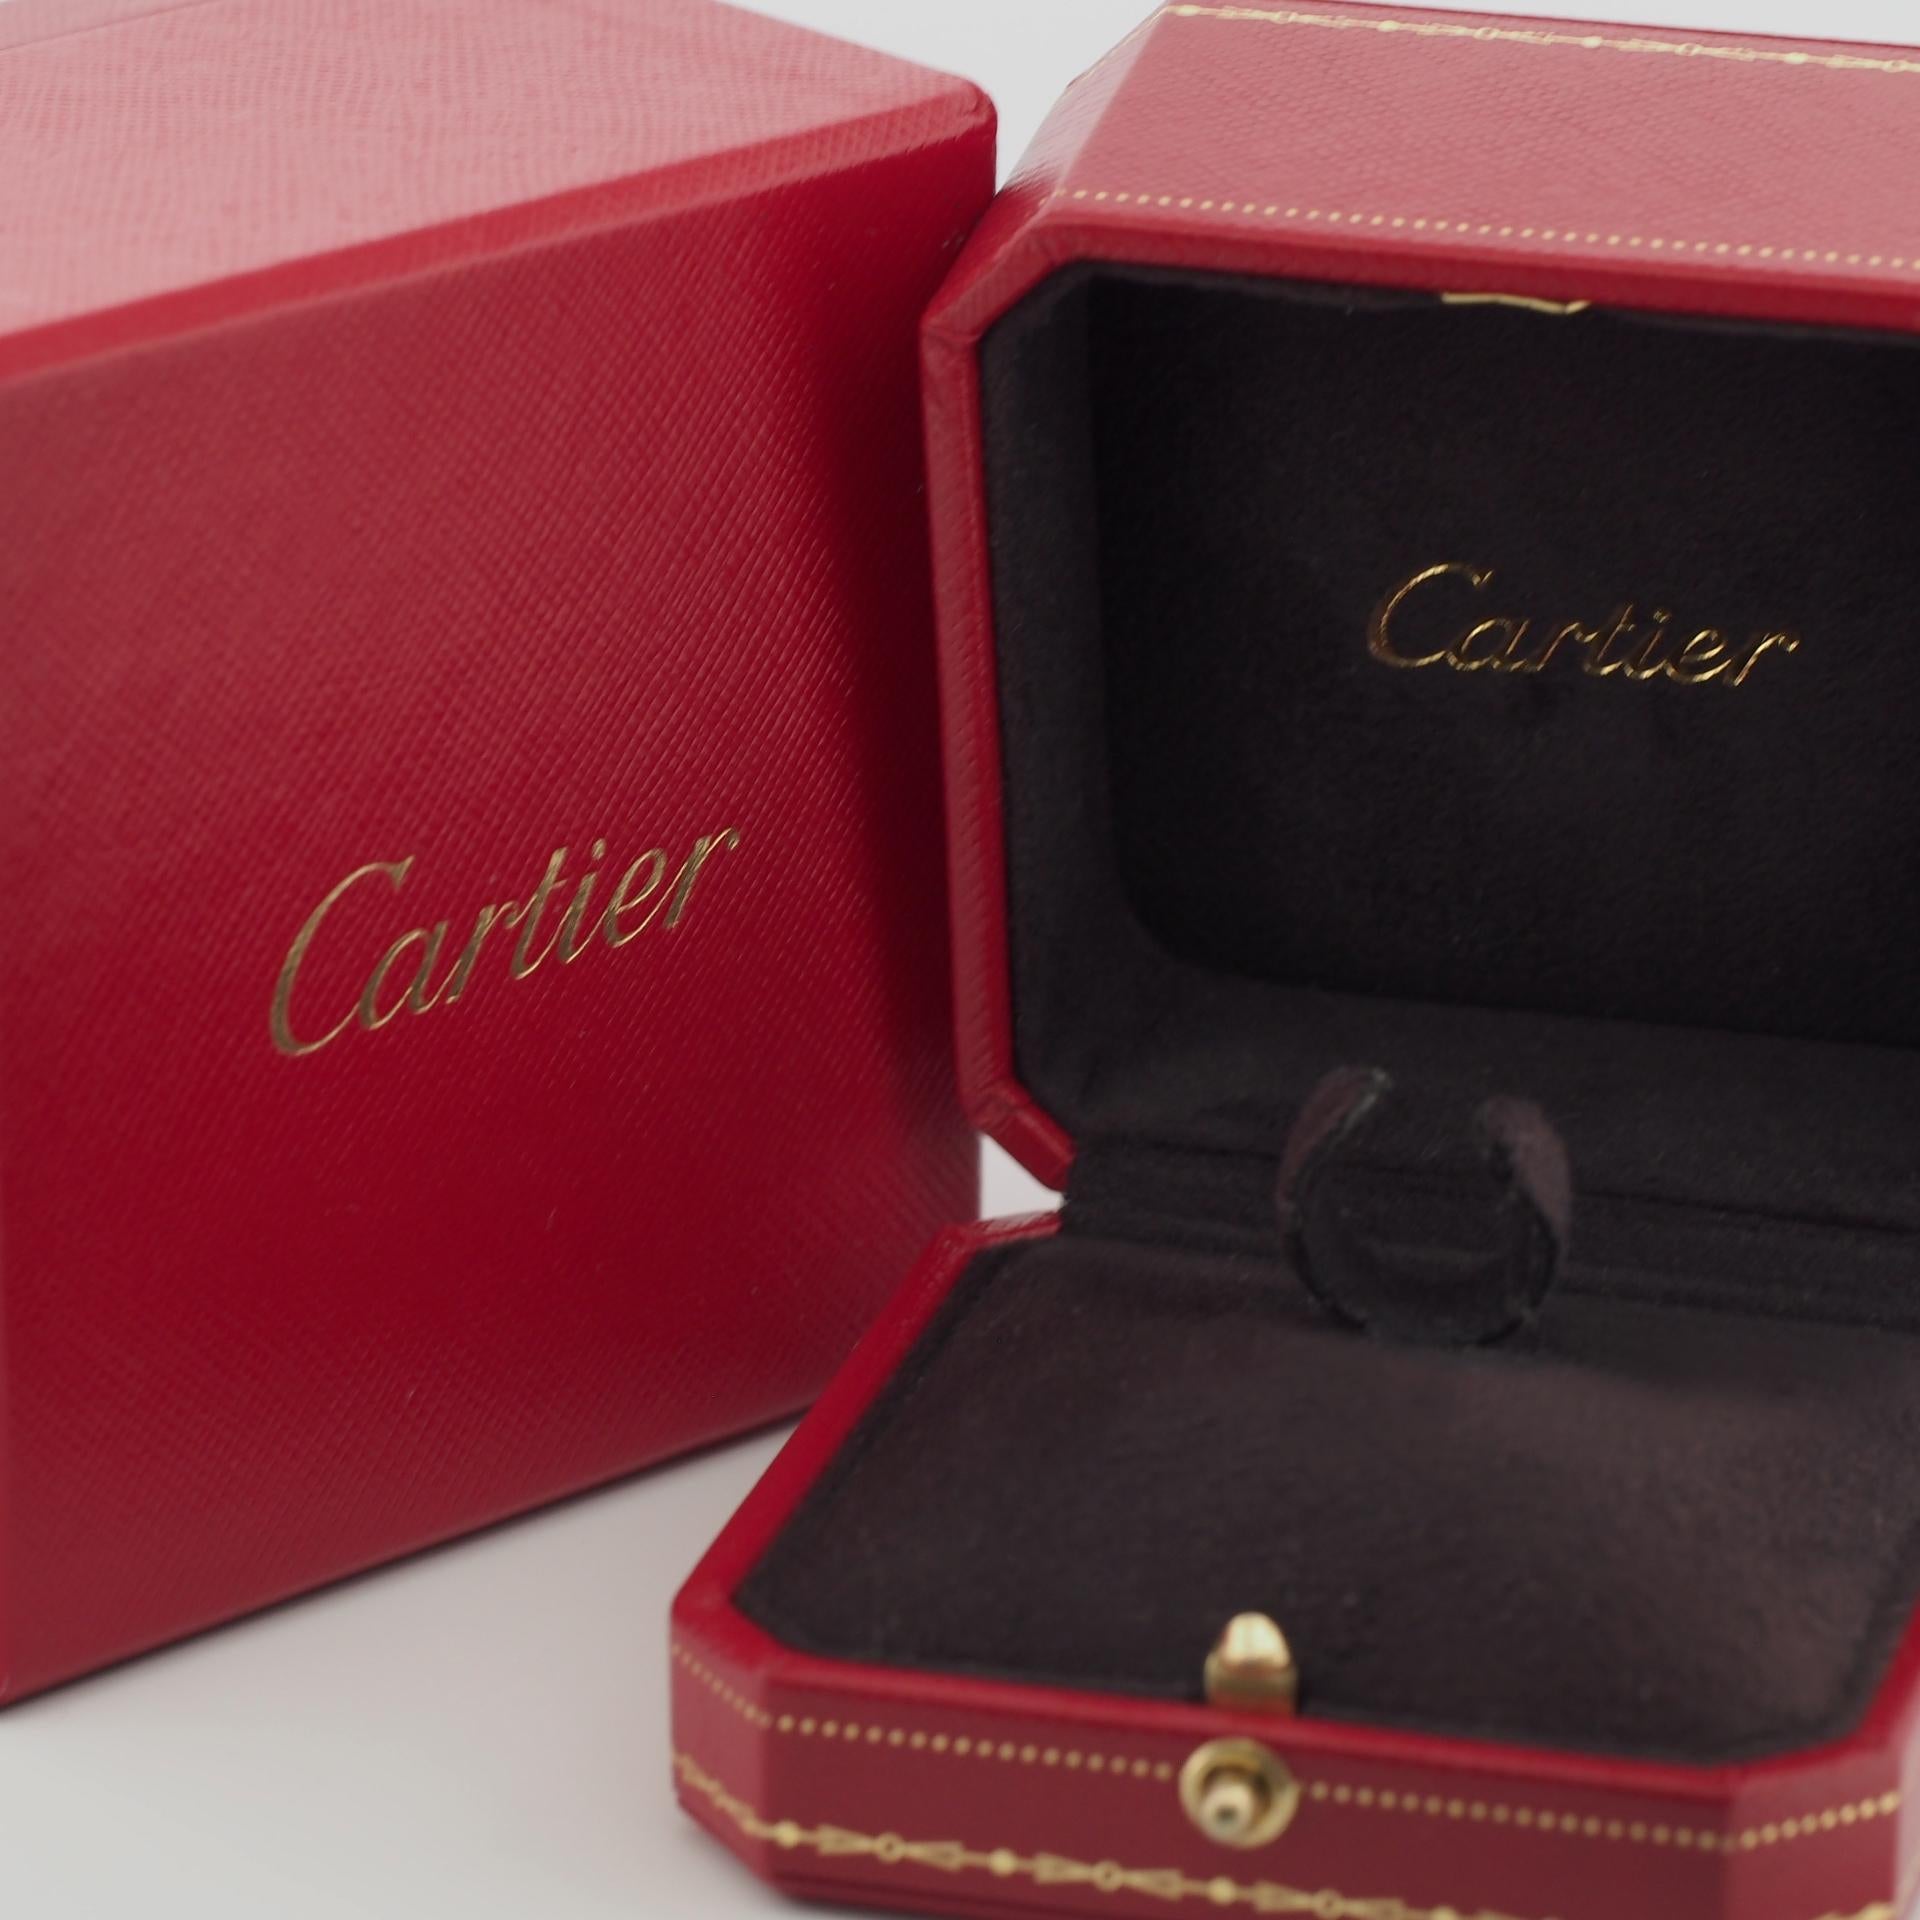 Cartier 15 Diamonds Star Trinity Ring 3G 55 US 7.25 1